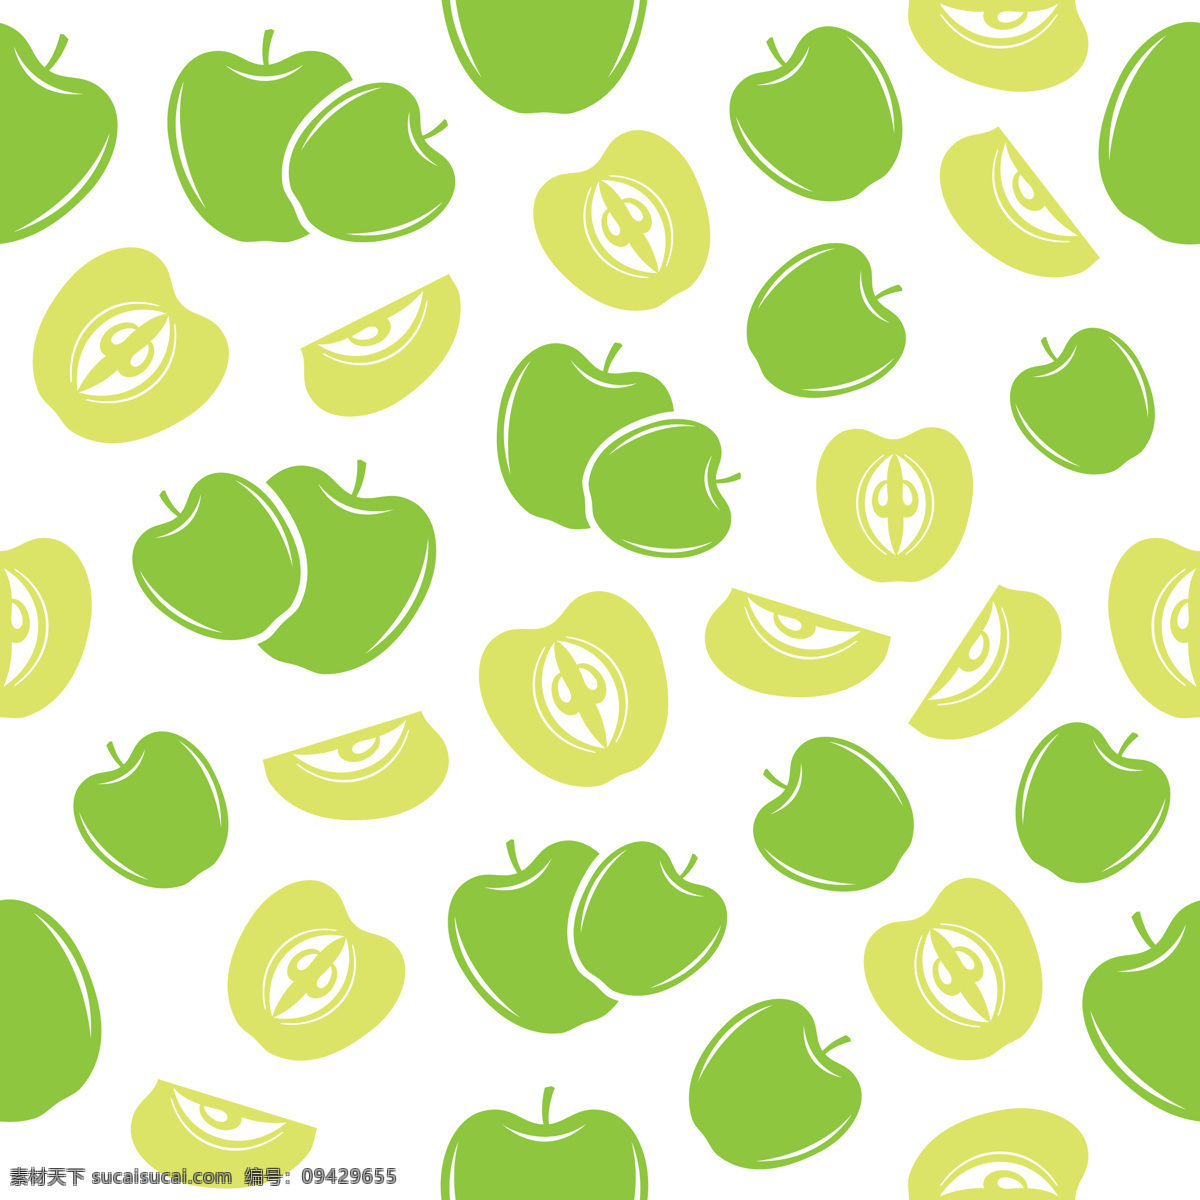 水果 背景 图 手绘 苹果 水果背景图 绿色 卡通 可爱 手绘水彩 底纹边框 背景底纹